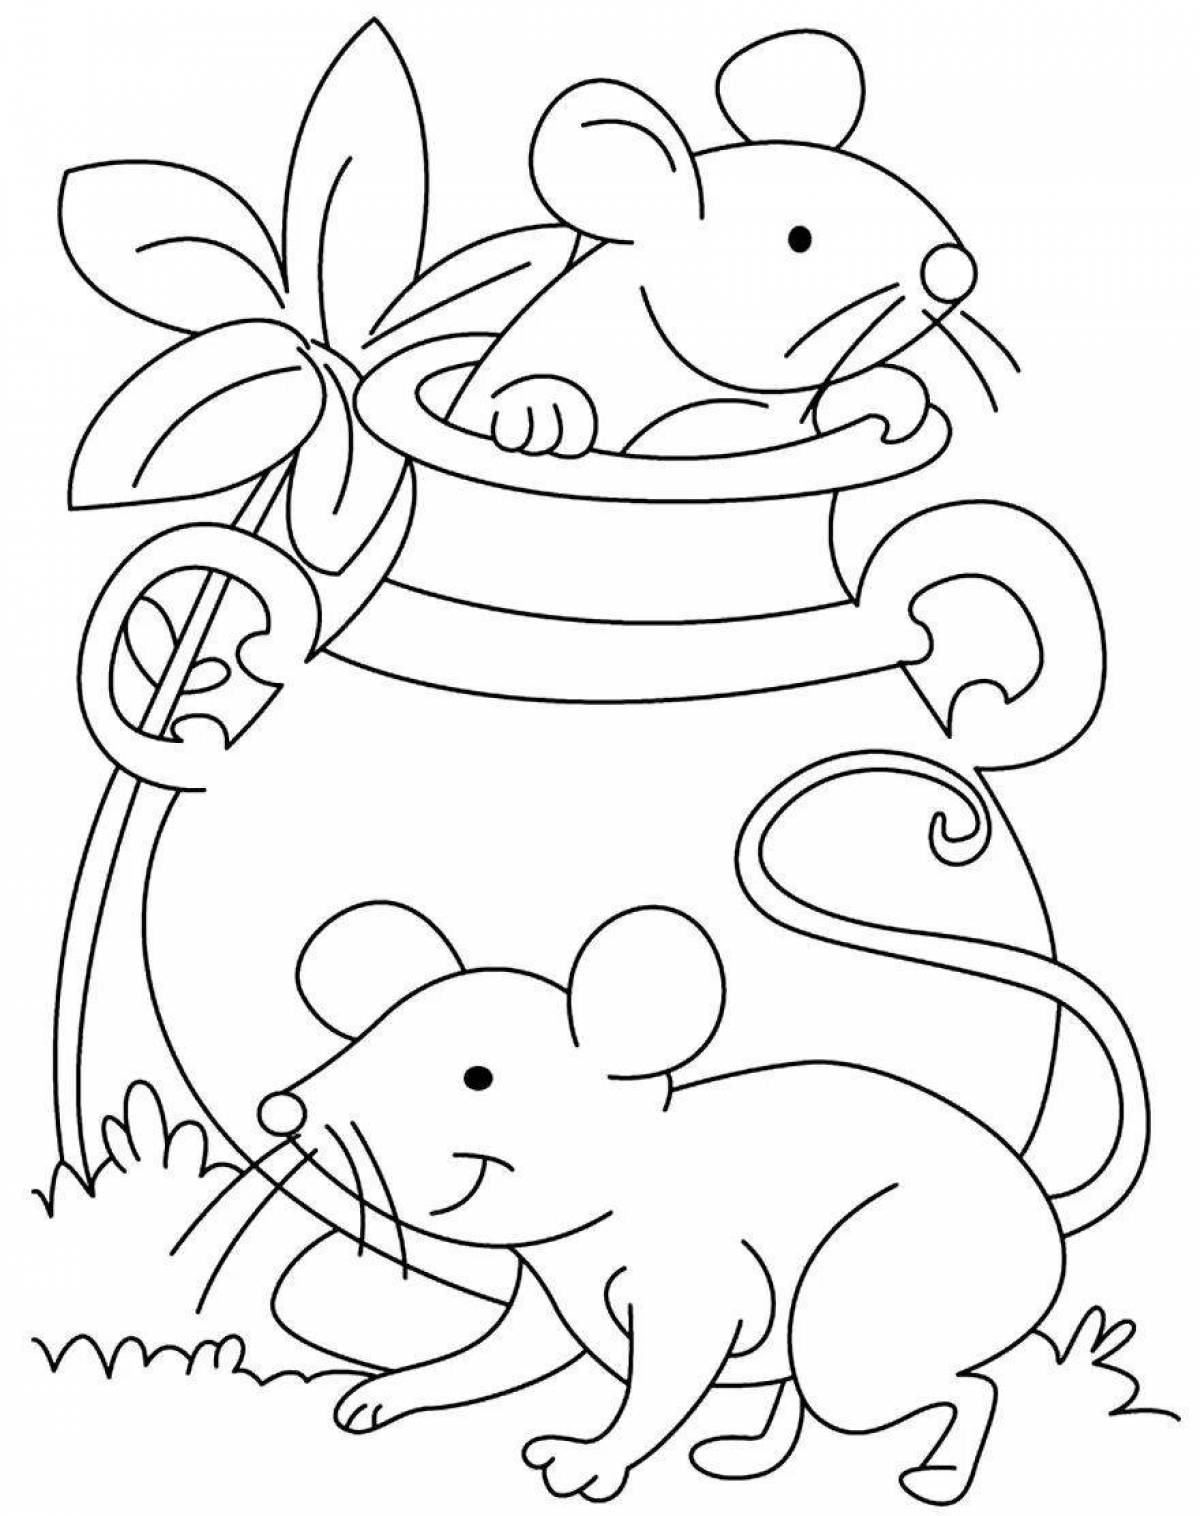 Детская раскраска мышь для детей 3-4 лет